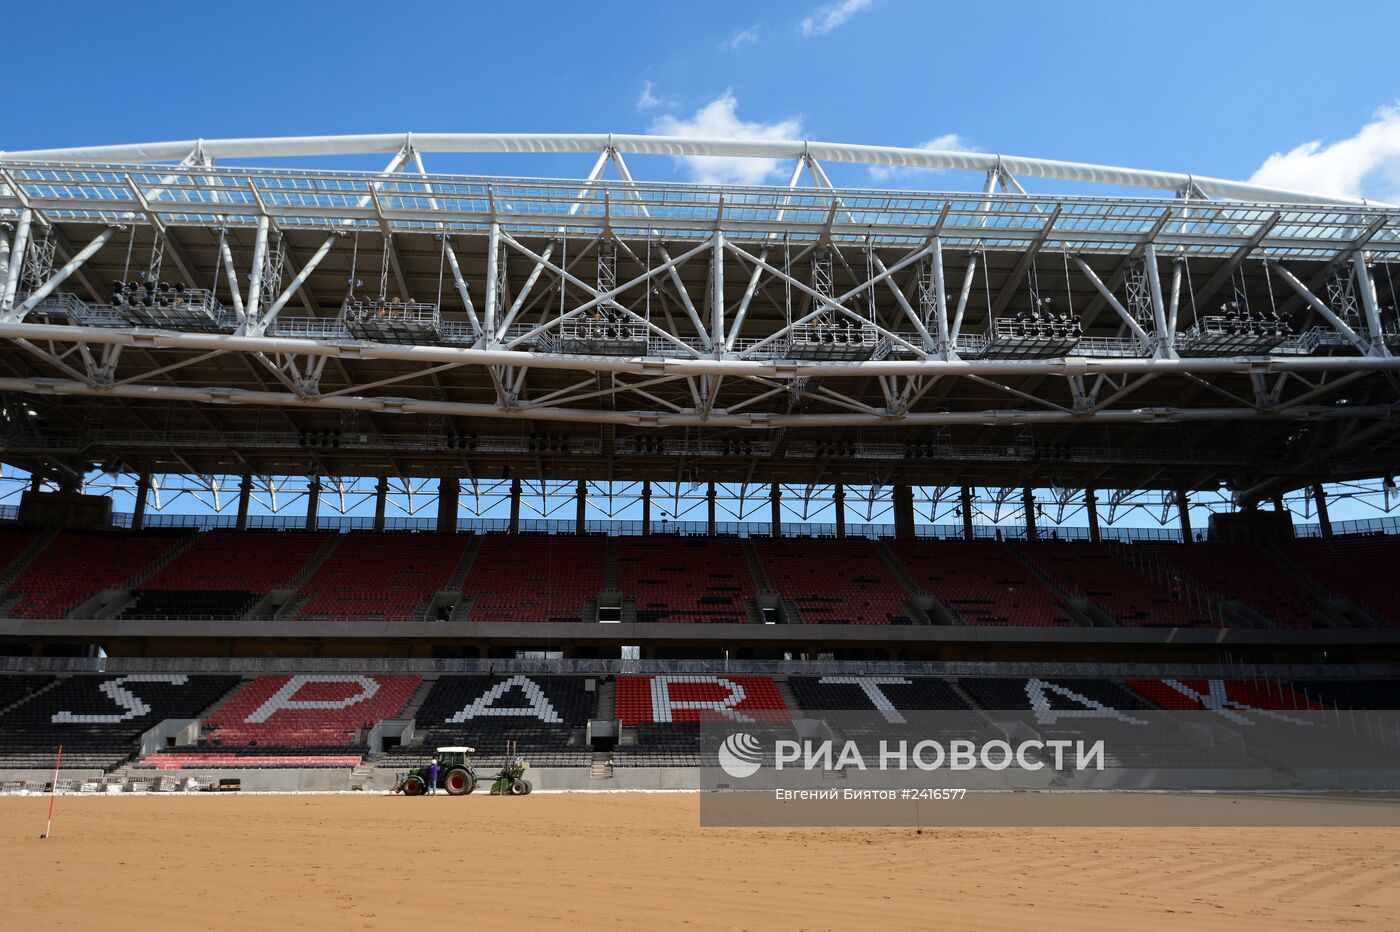 Е.Титов и Е.Кафельников посетили строительство стадиона "Открытие-Арена"